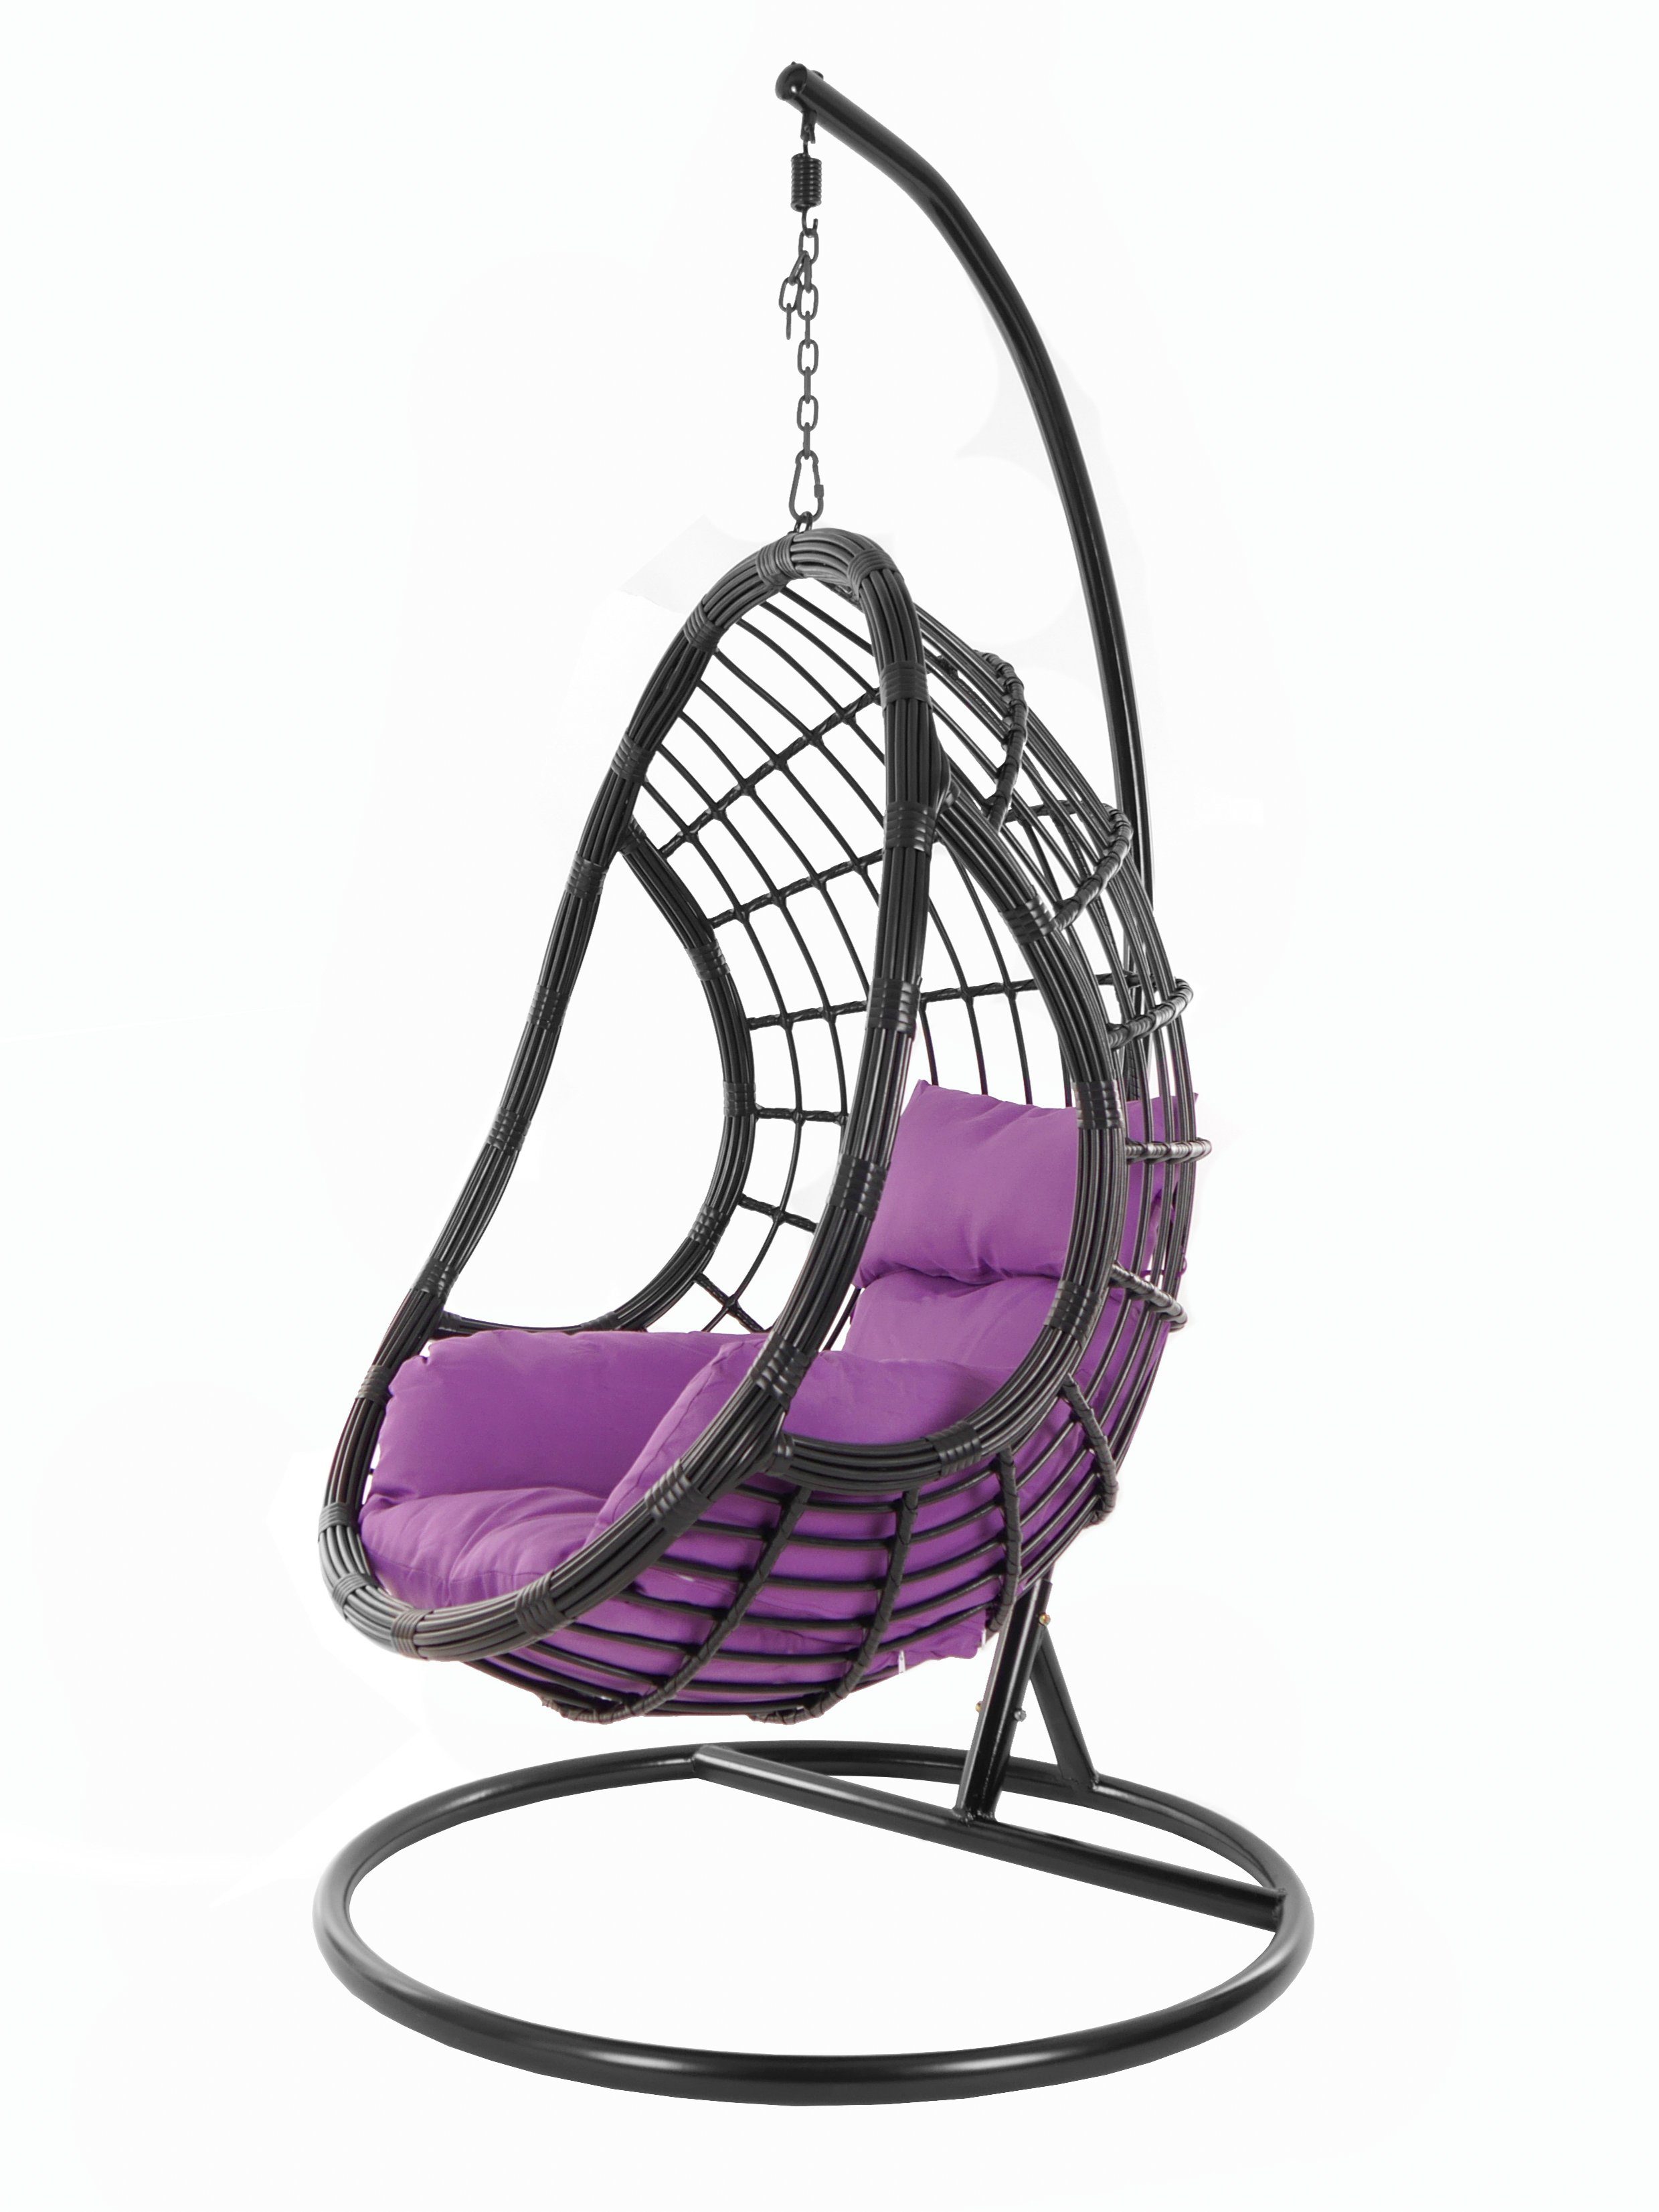 KIDEO Hängesessel PALMANOVA black, Schwebesessel, Swing Chair, Hängesessel mit Gestell und Kissen, Nest-Kissen lila (4050 violet)